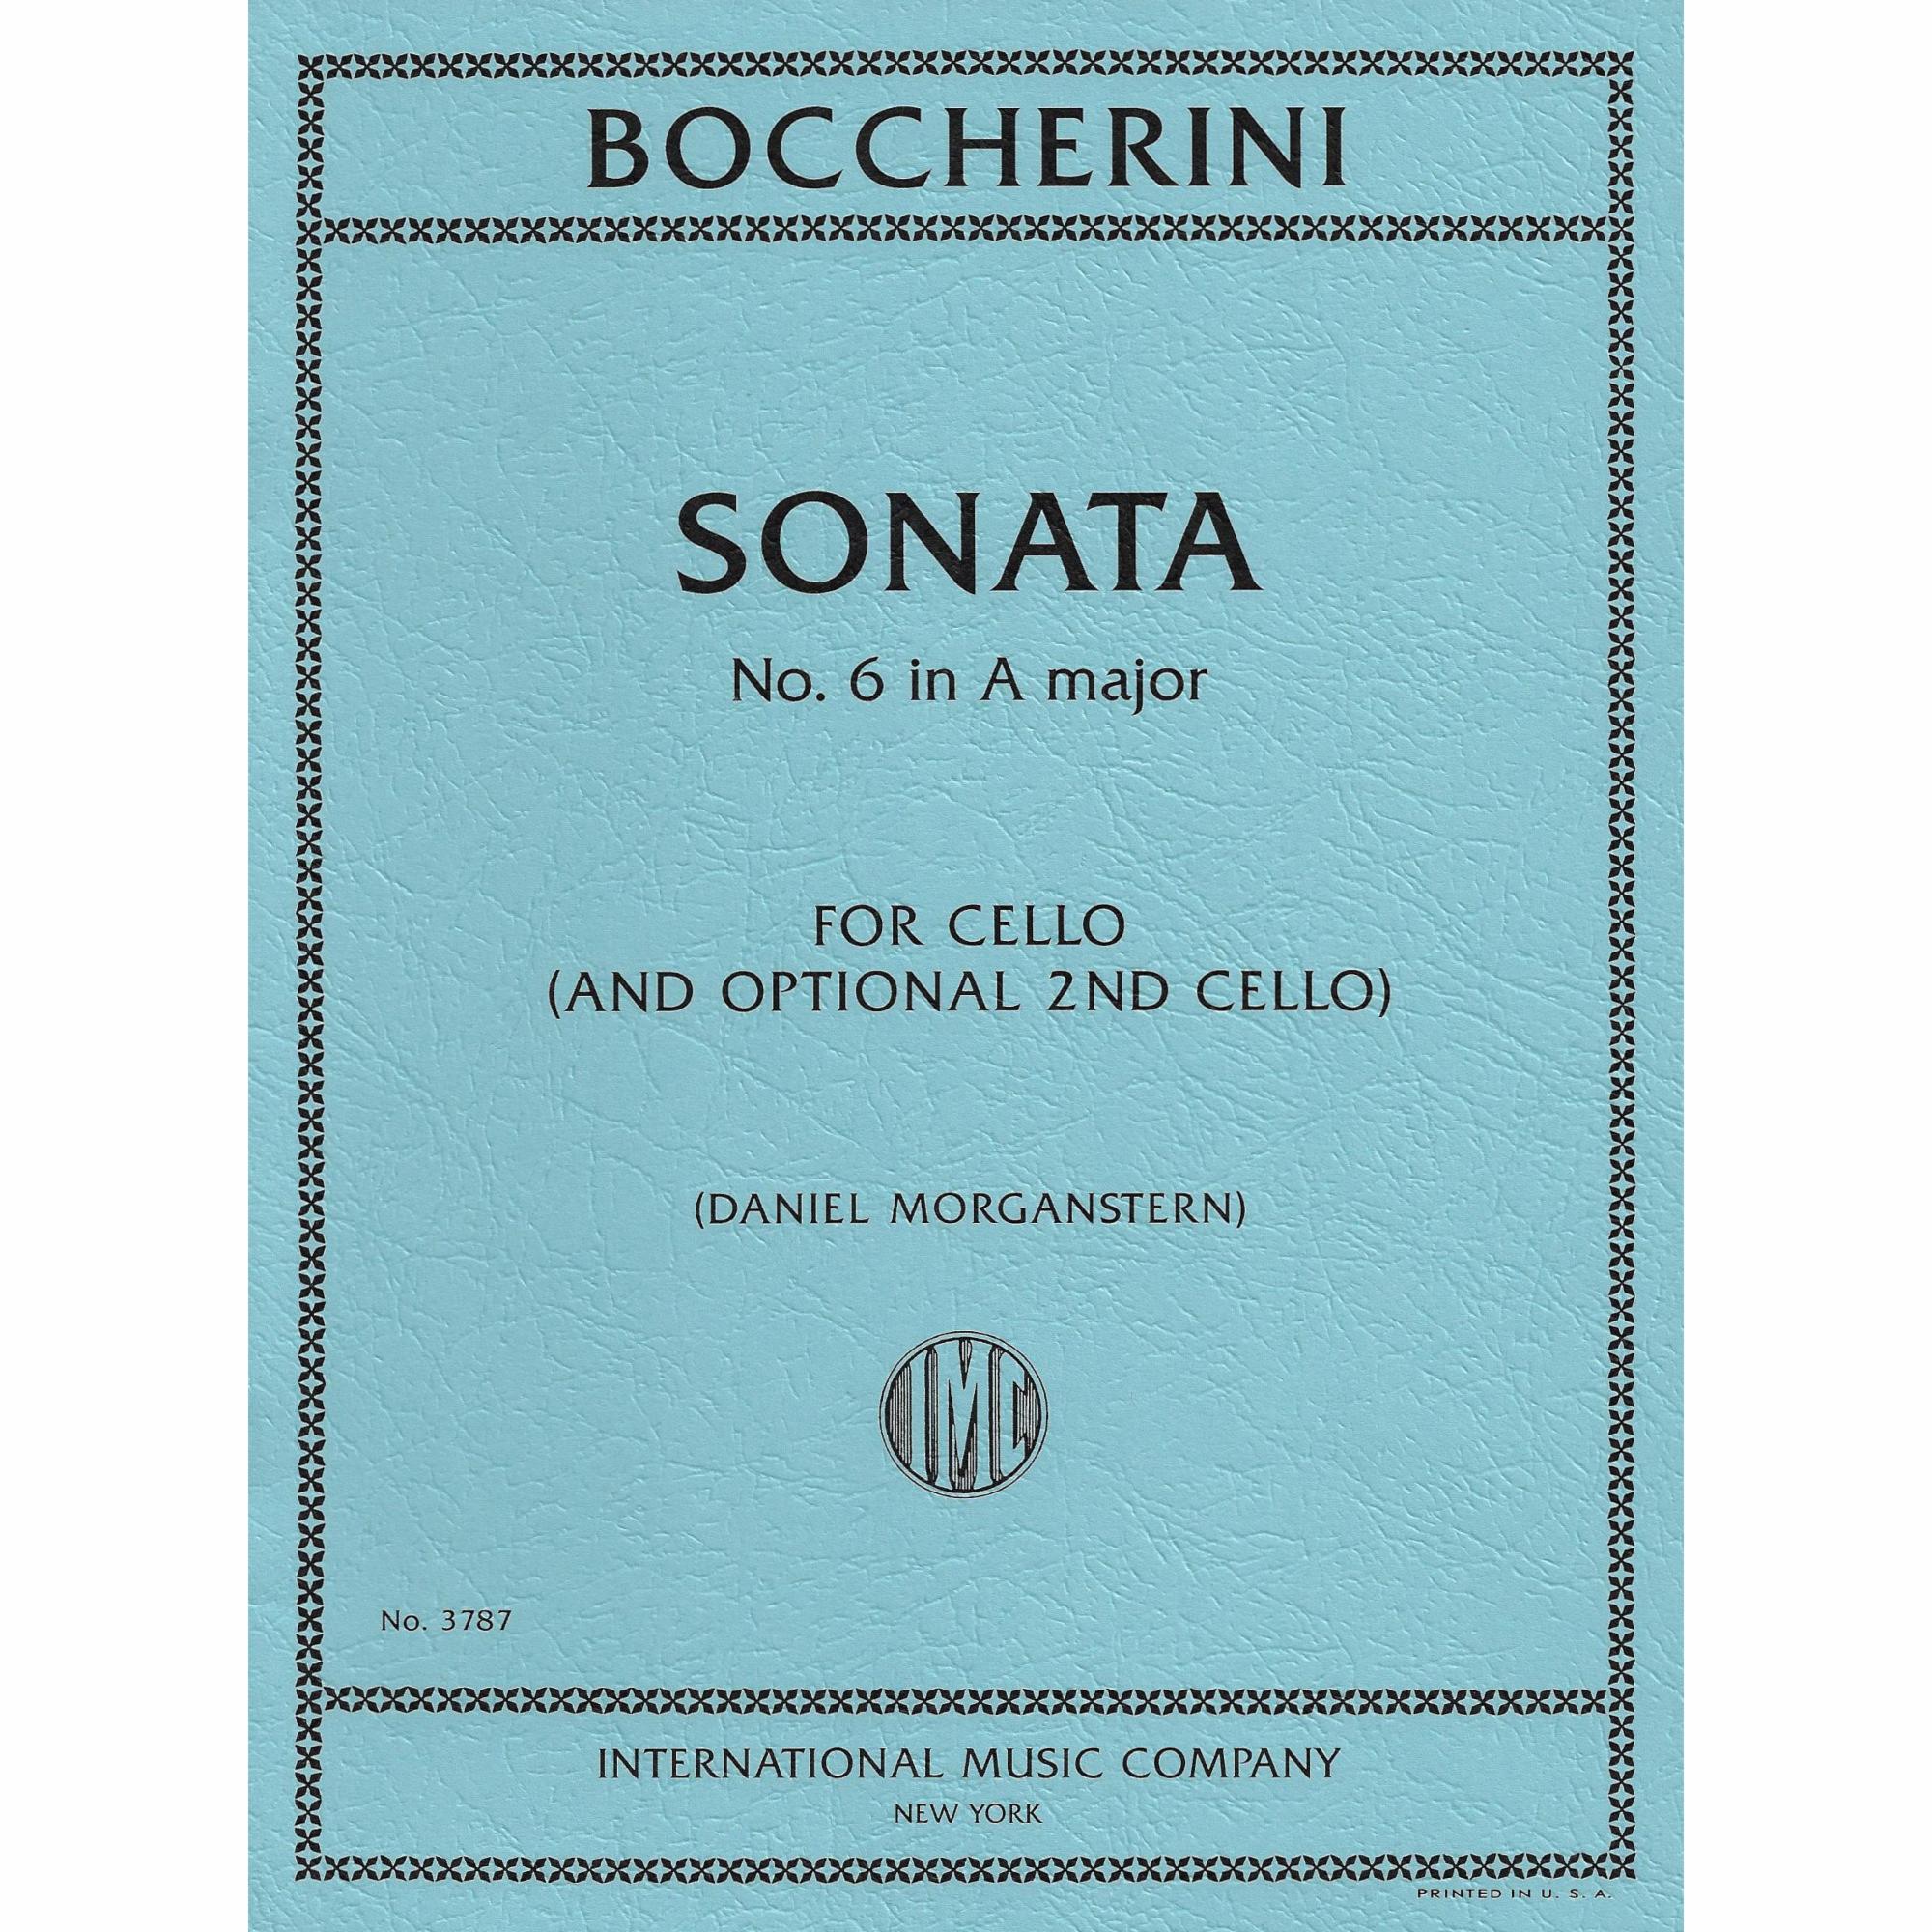 Boccherini -- Sonata No. 6 in A Major for Two Cellos